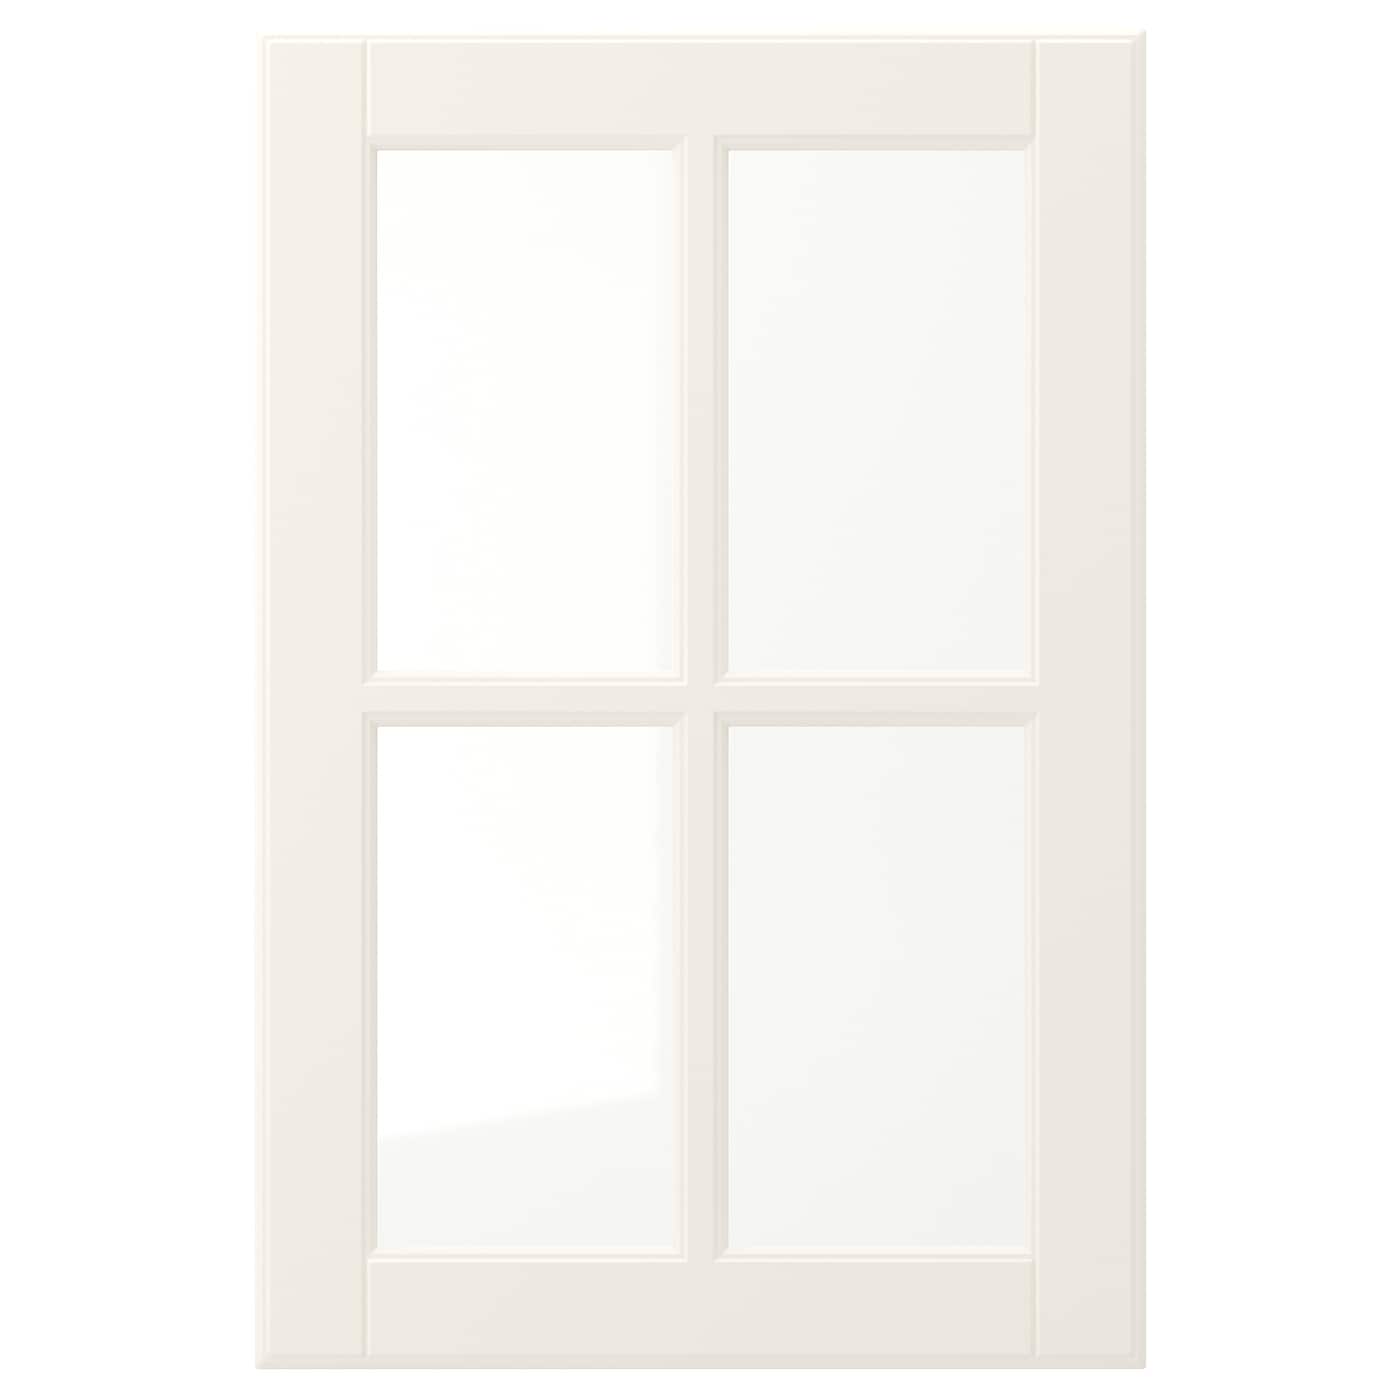 Дверца со стеклом - IKEA BODBYN, 60х40 см, кремовый, БУДБИН ИКЕА